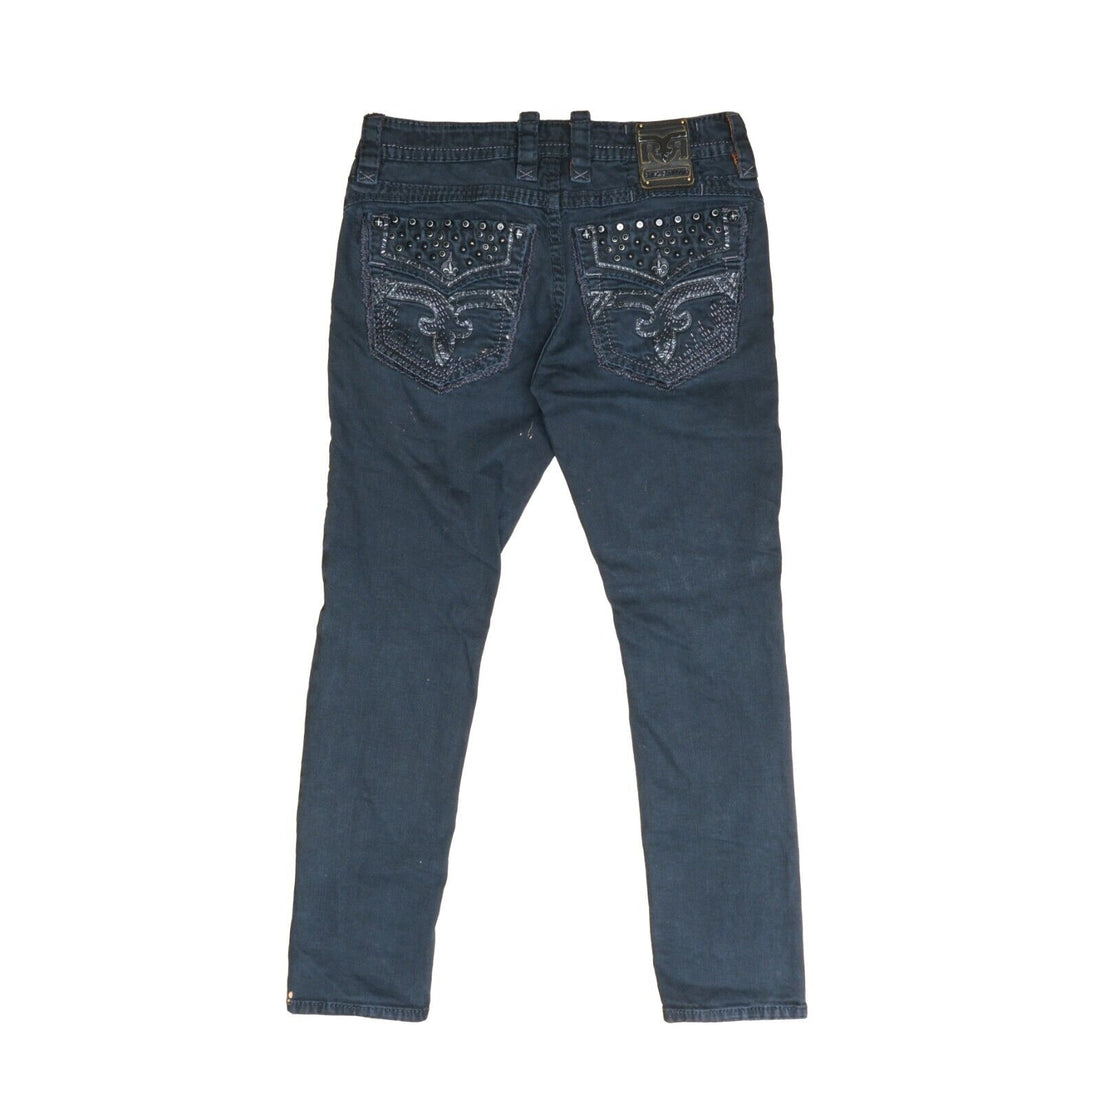 Vintage Rock Revival Lampson Biker Denim Jeans Size 34 X 32 Black